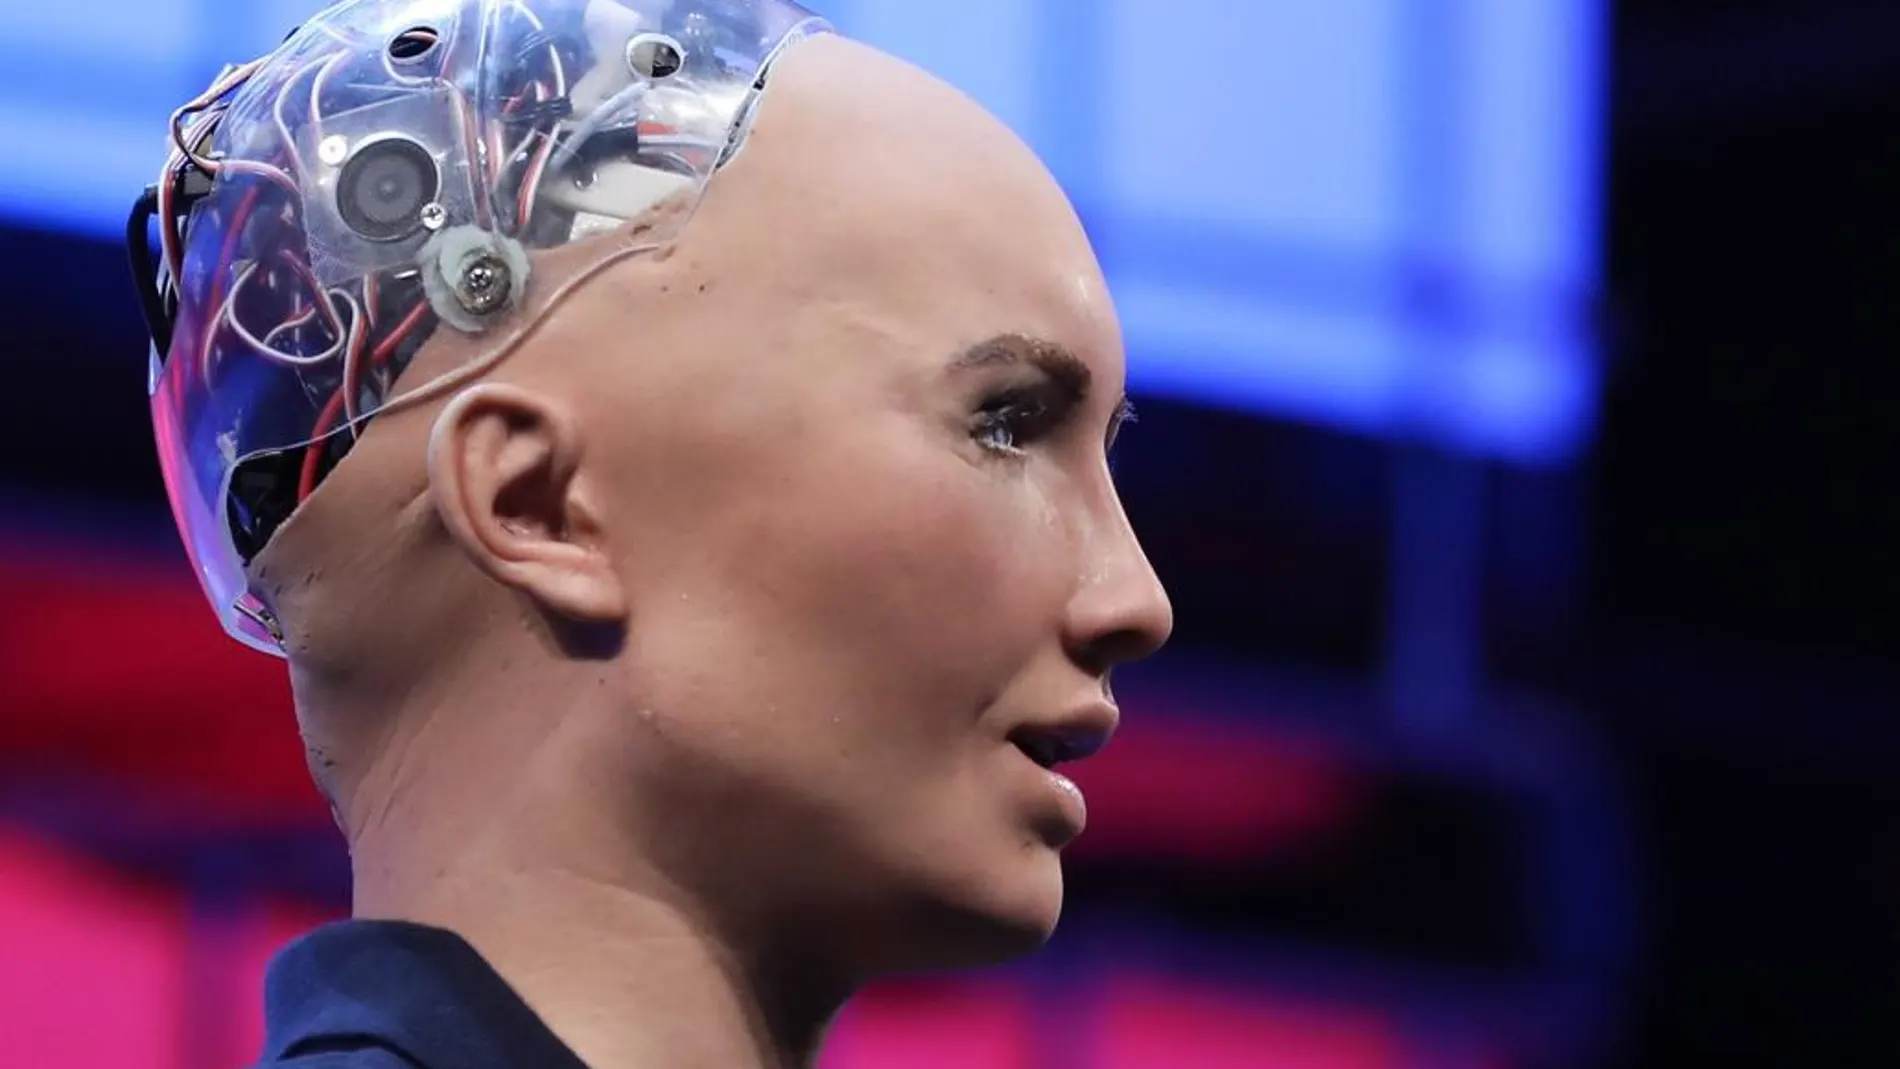 El robot humanoide Sophia, que obtuvo la nacionalidad saudí el pasado mes de octubre, interviene durante la segunda jornada de la Web Summit en Lisboa (Portugal)